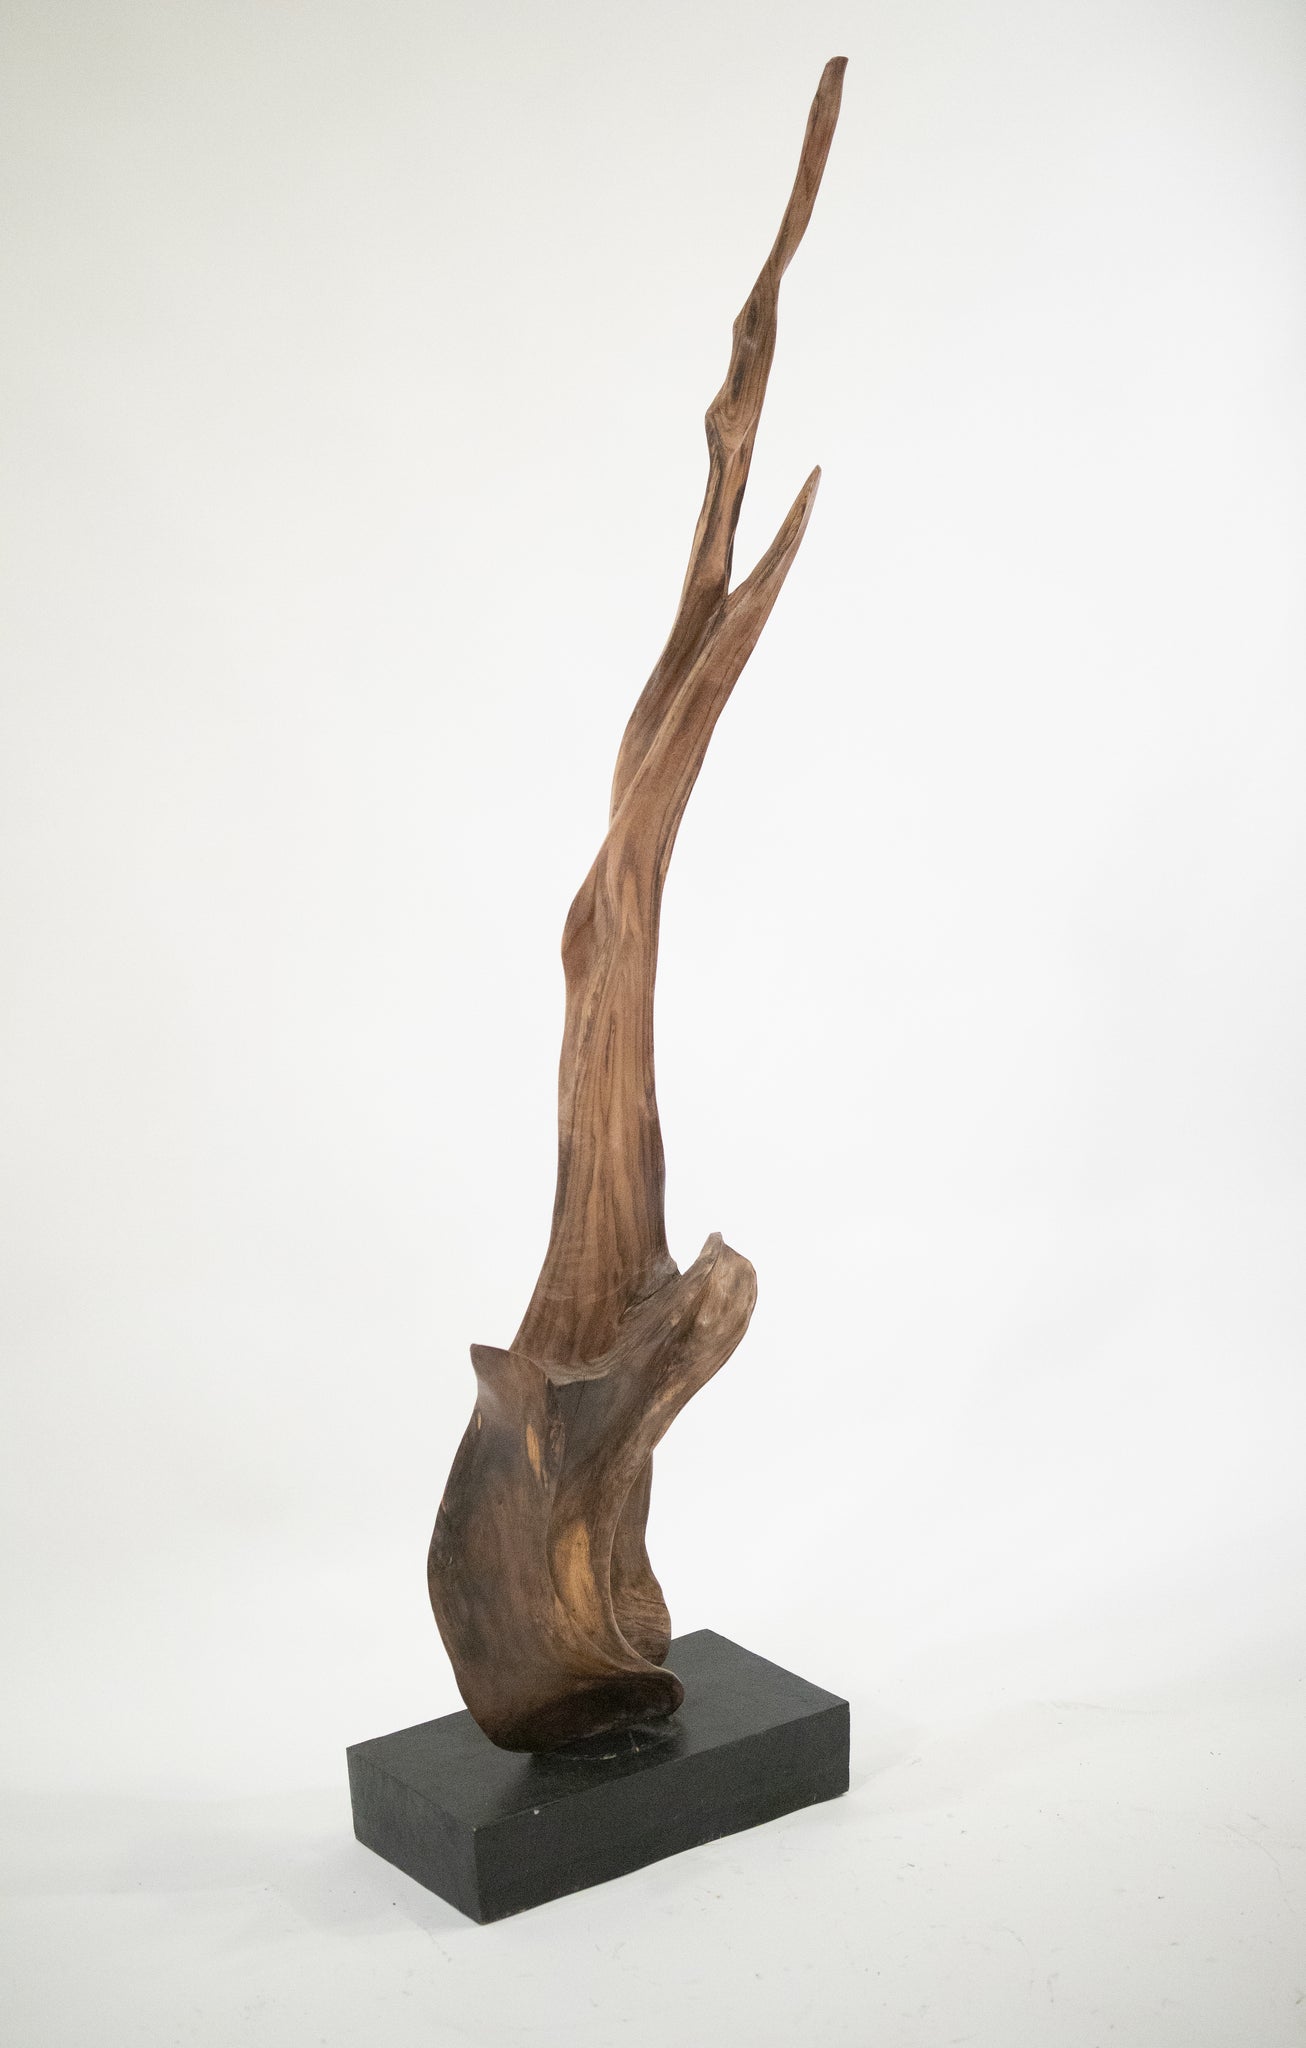 Wooden Sculpture 6 - Manhattan Label